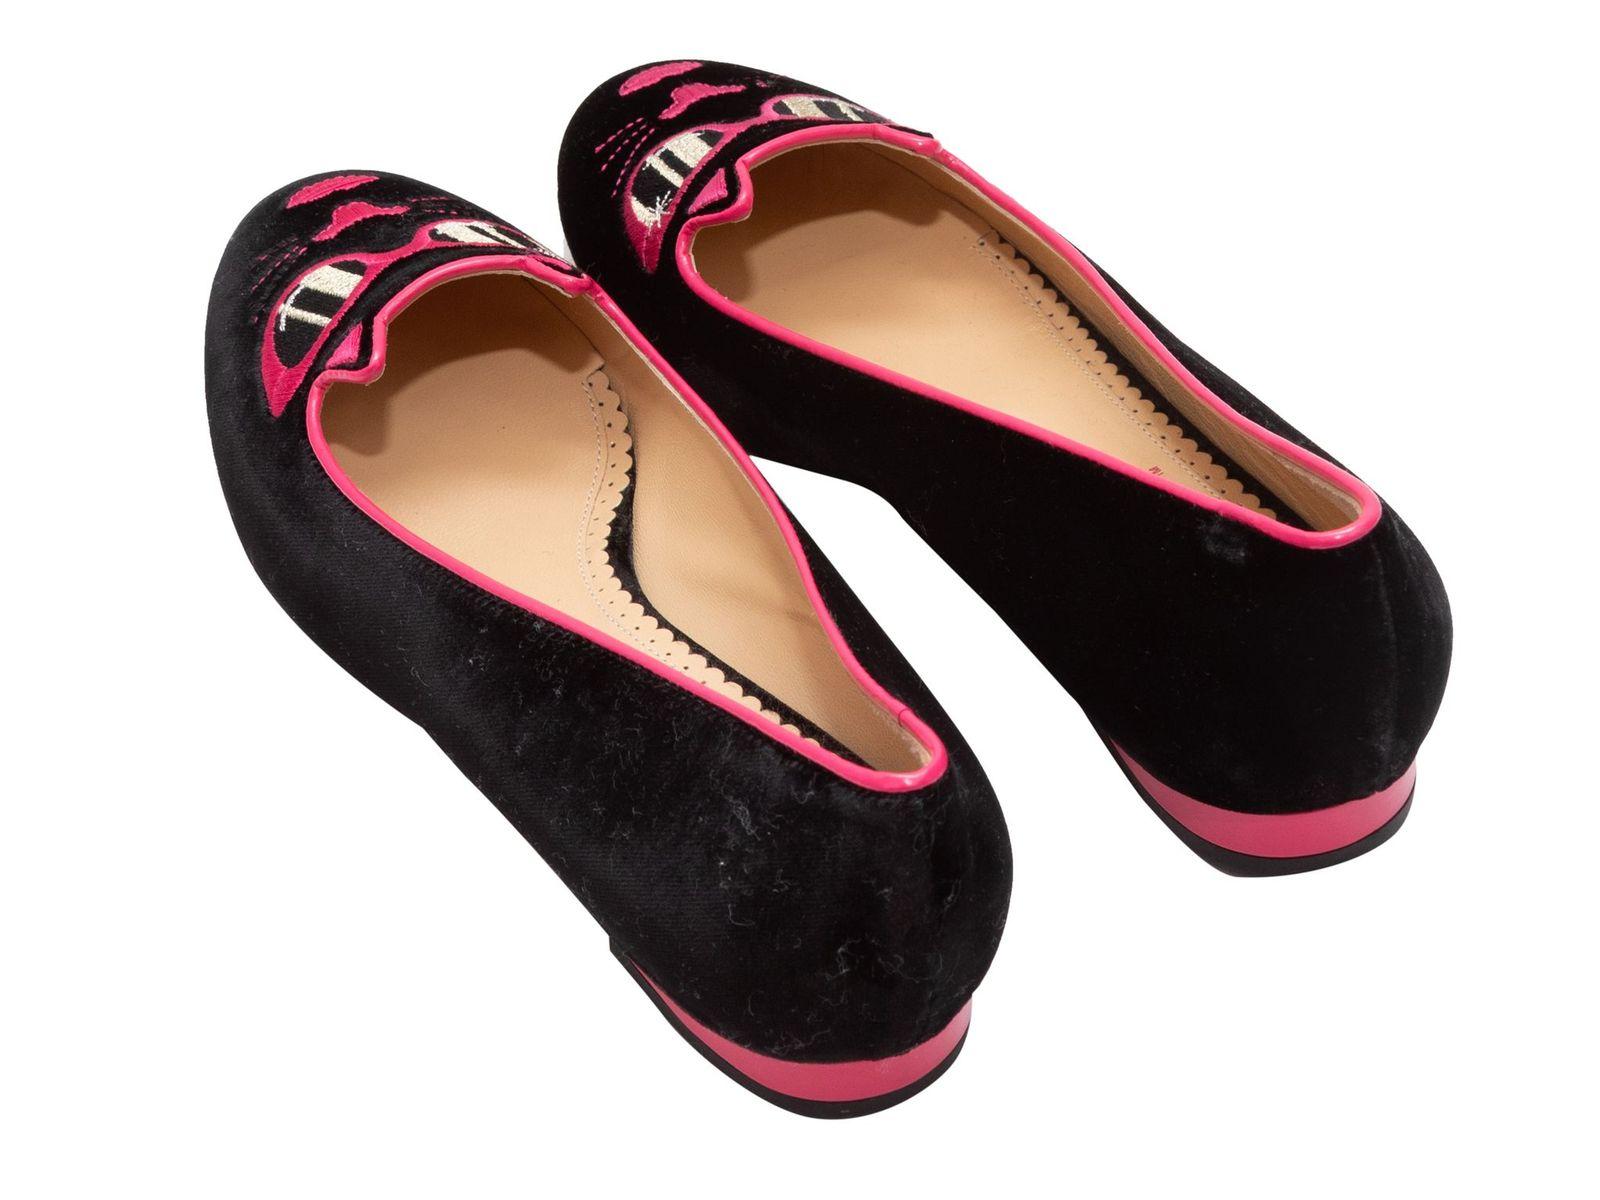  Charlotte Olympia - Chaussures chat en velours et cuir noir et rose vif Pour femmes 